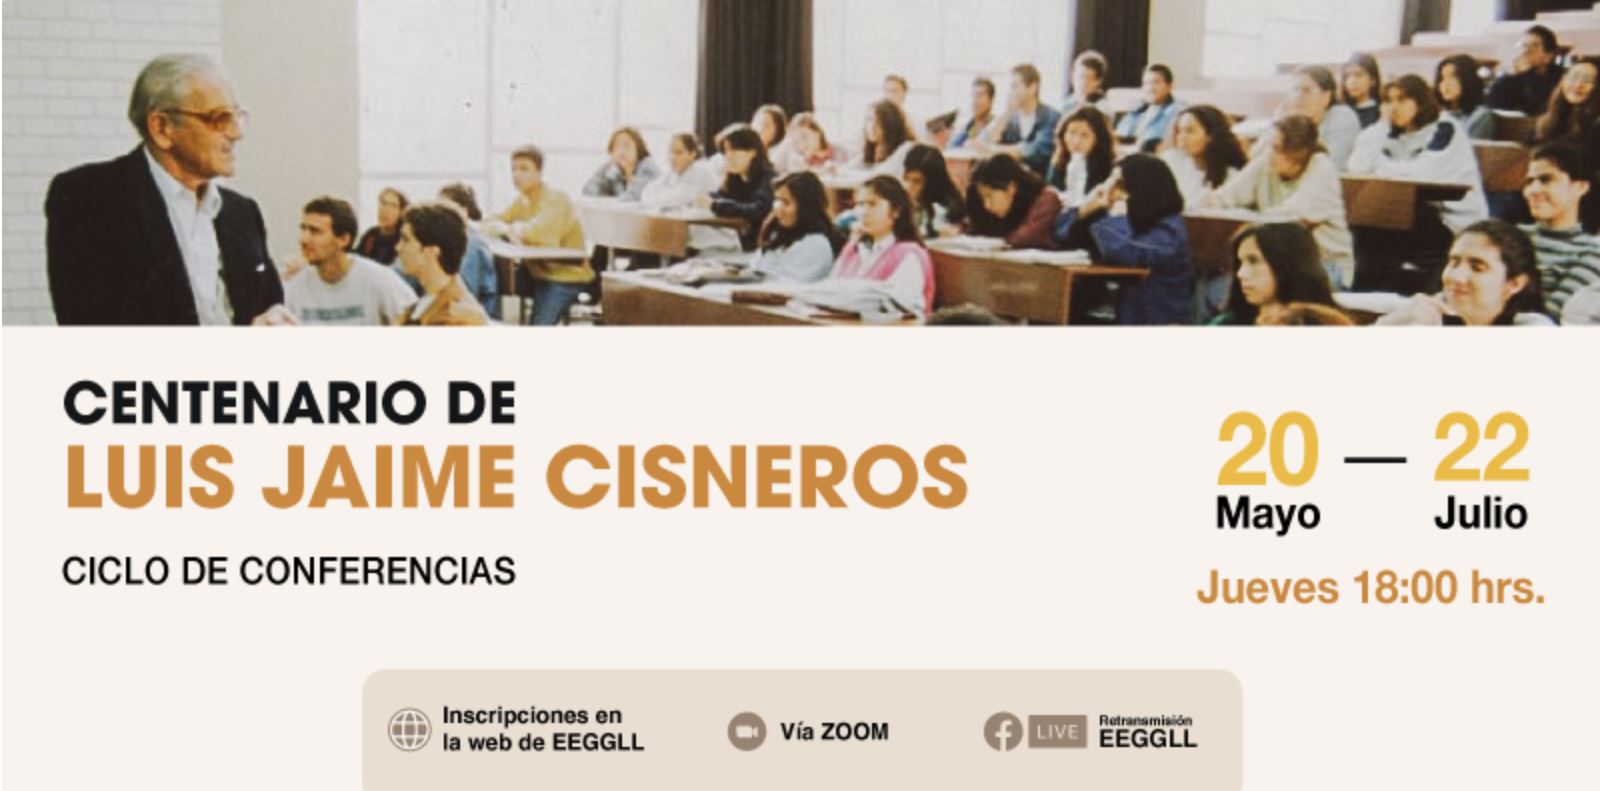 Ciclo de conferencias: Centenario de Luis Jaime Cisneros [videos]